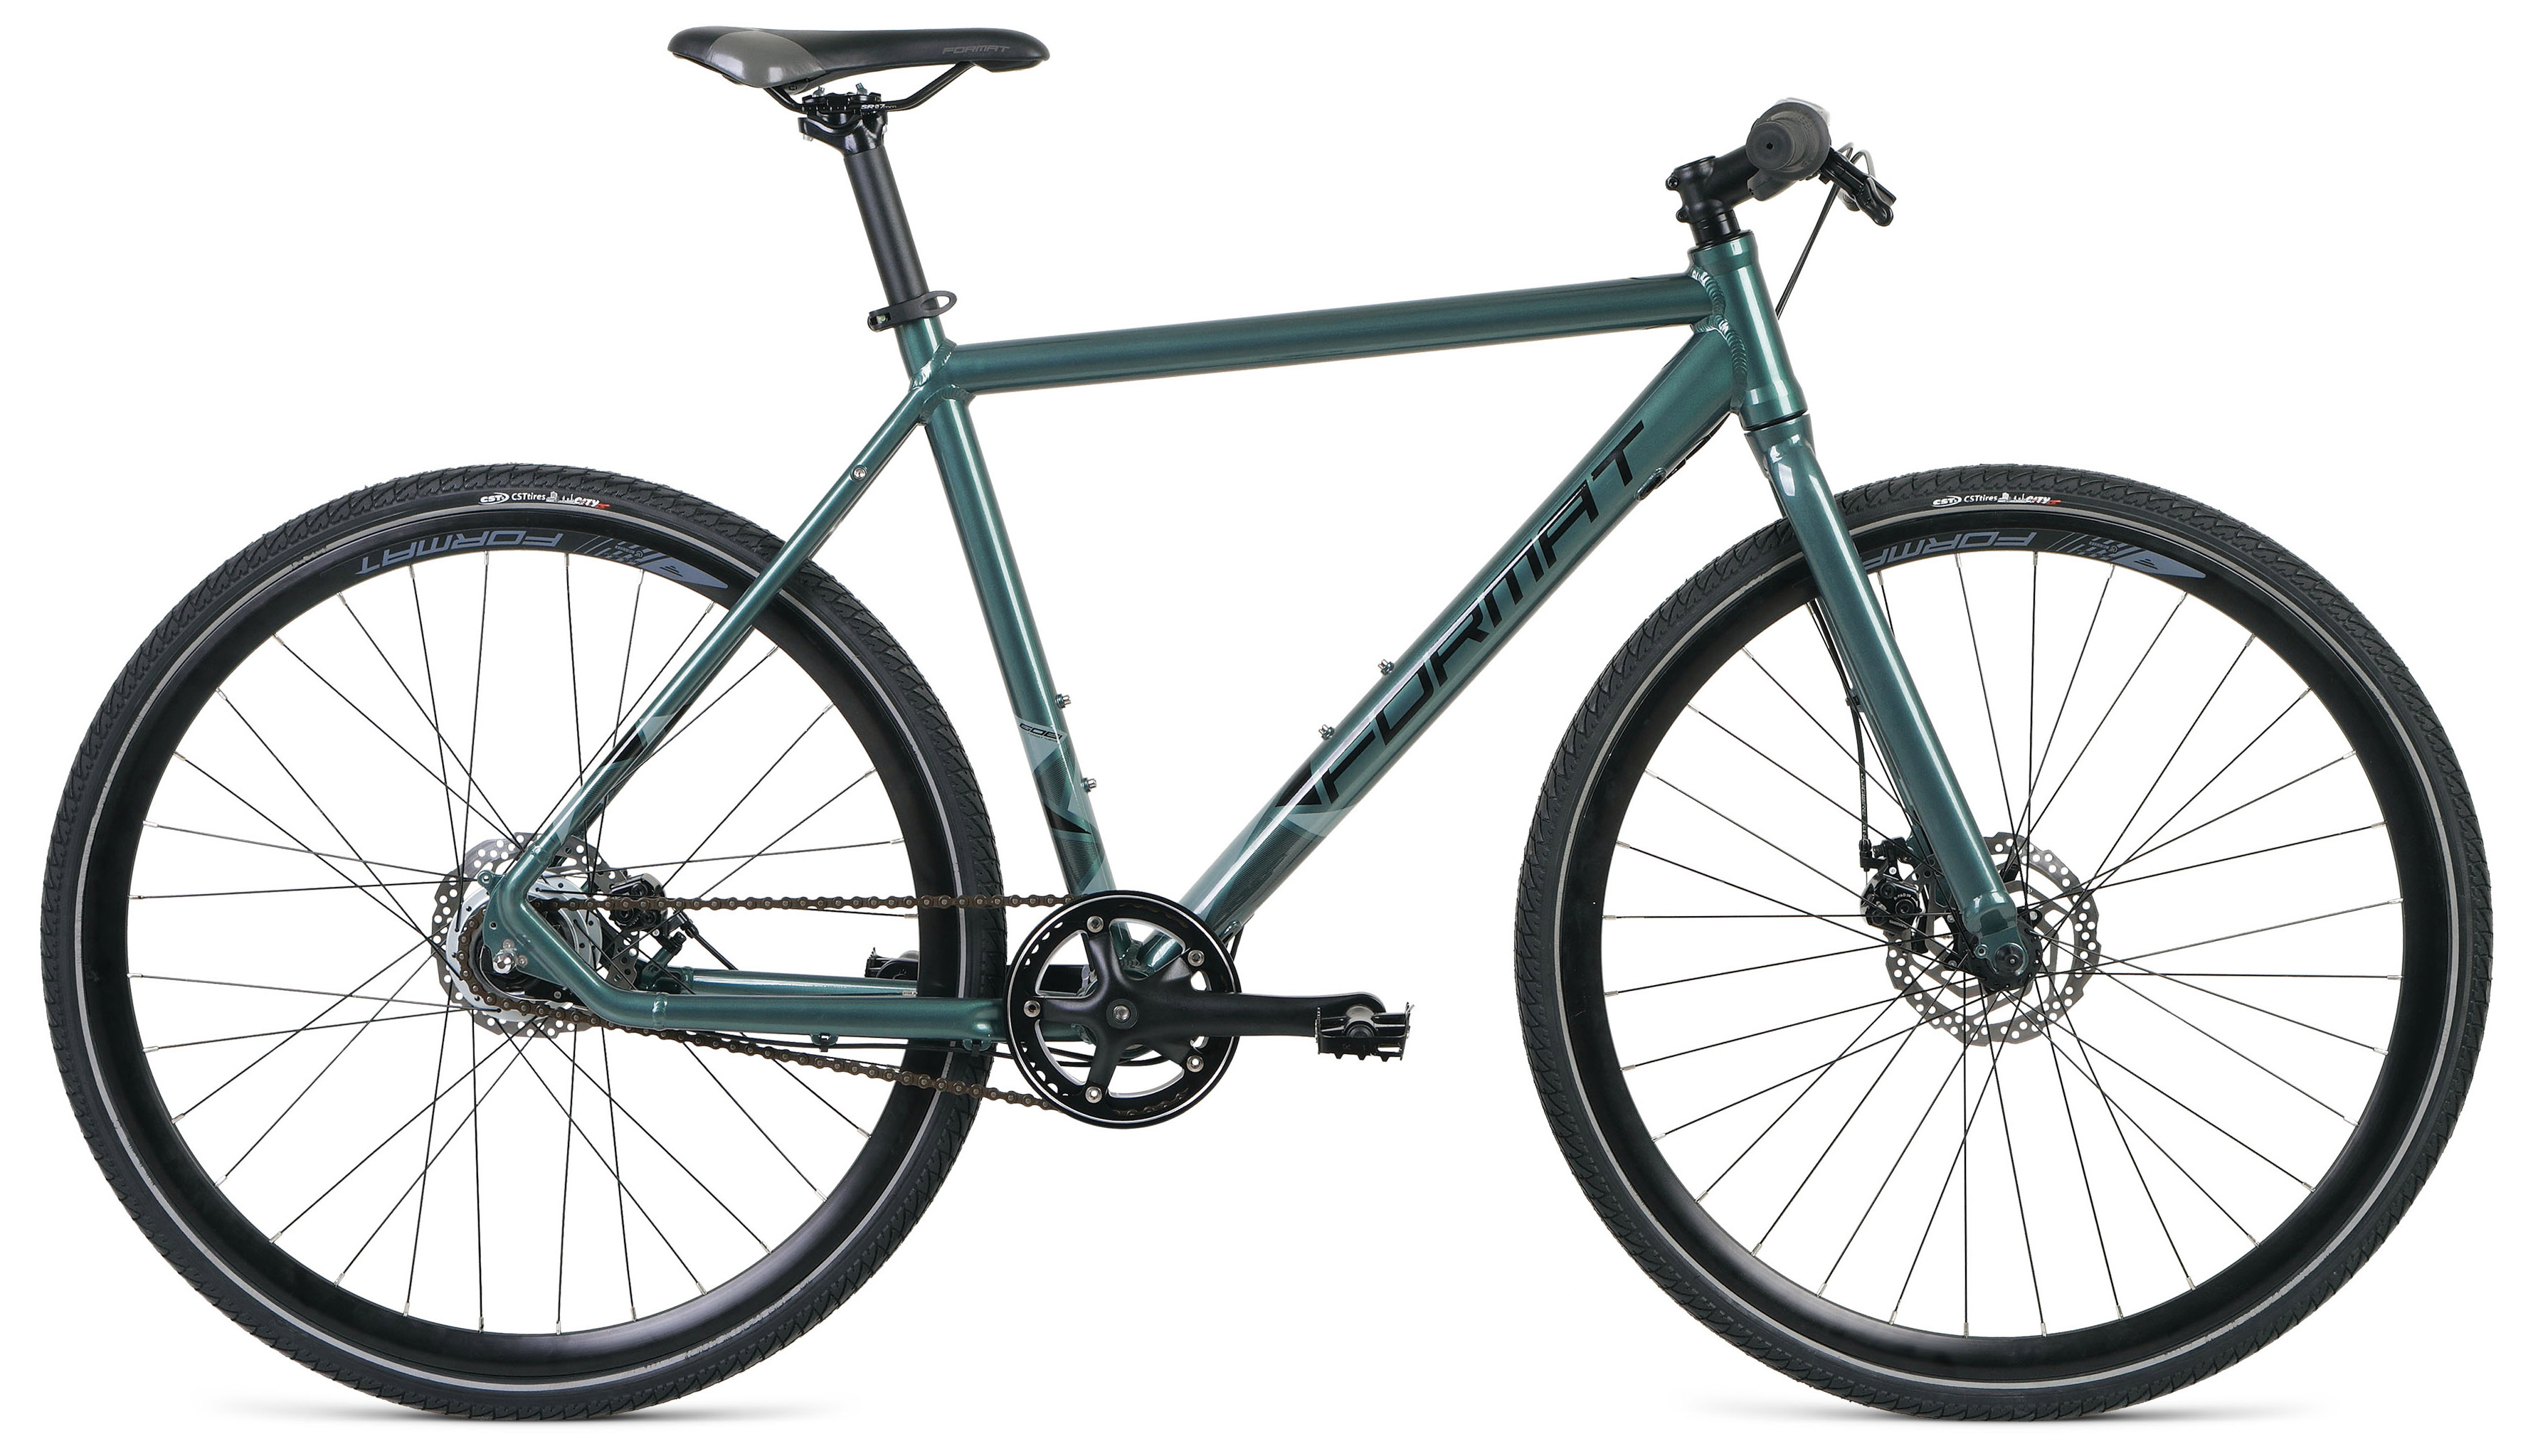  Отзывы о Городском велосипеде Format 5341 2020